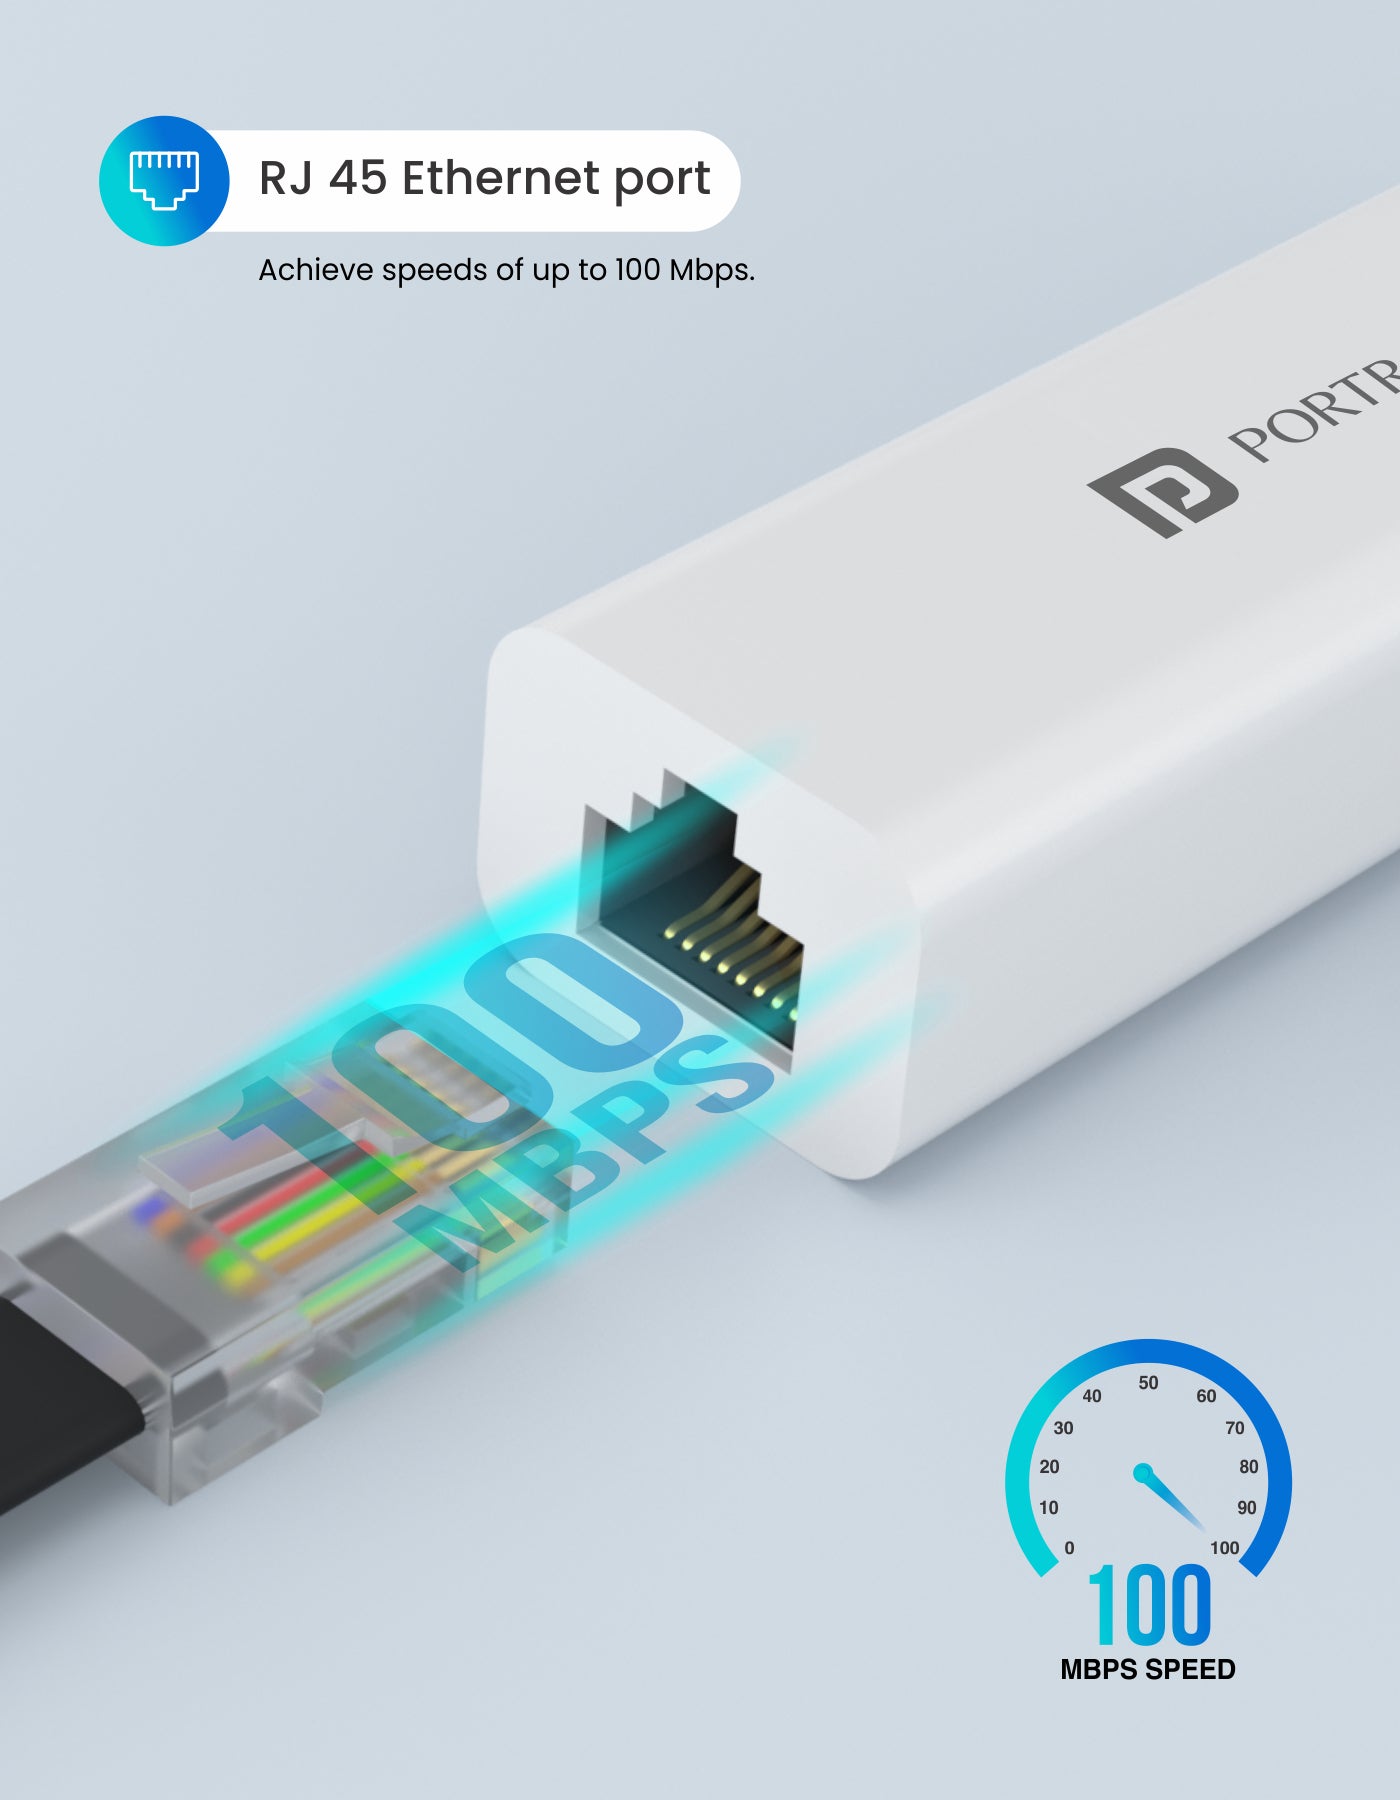 Portronics Mport 60-Multifunciton USB Hub